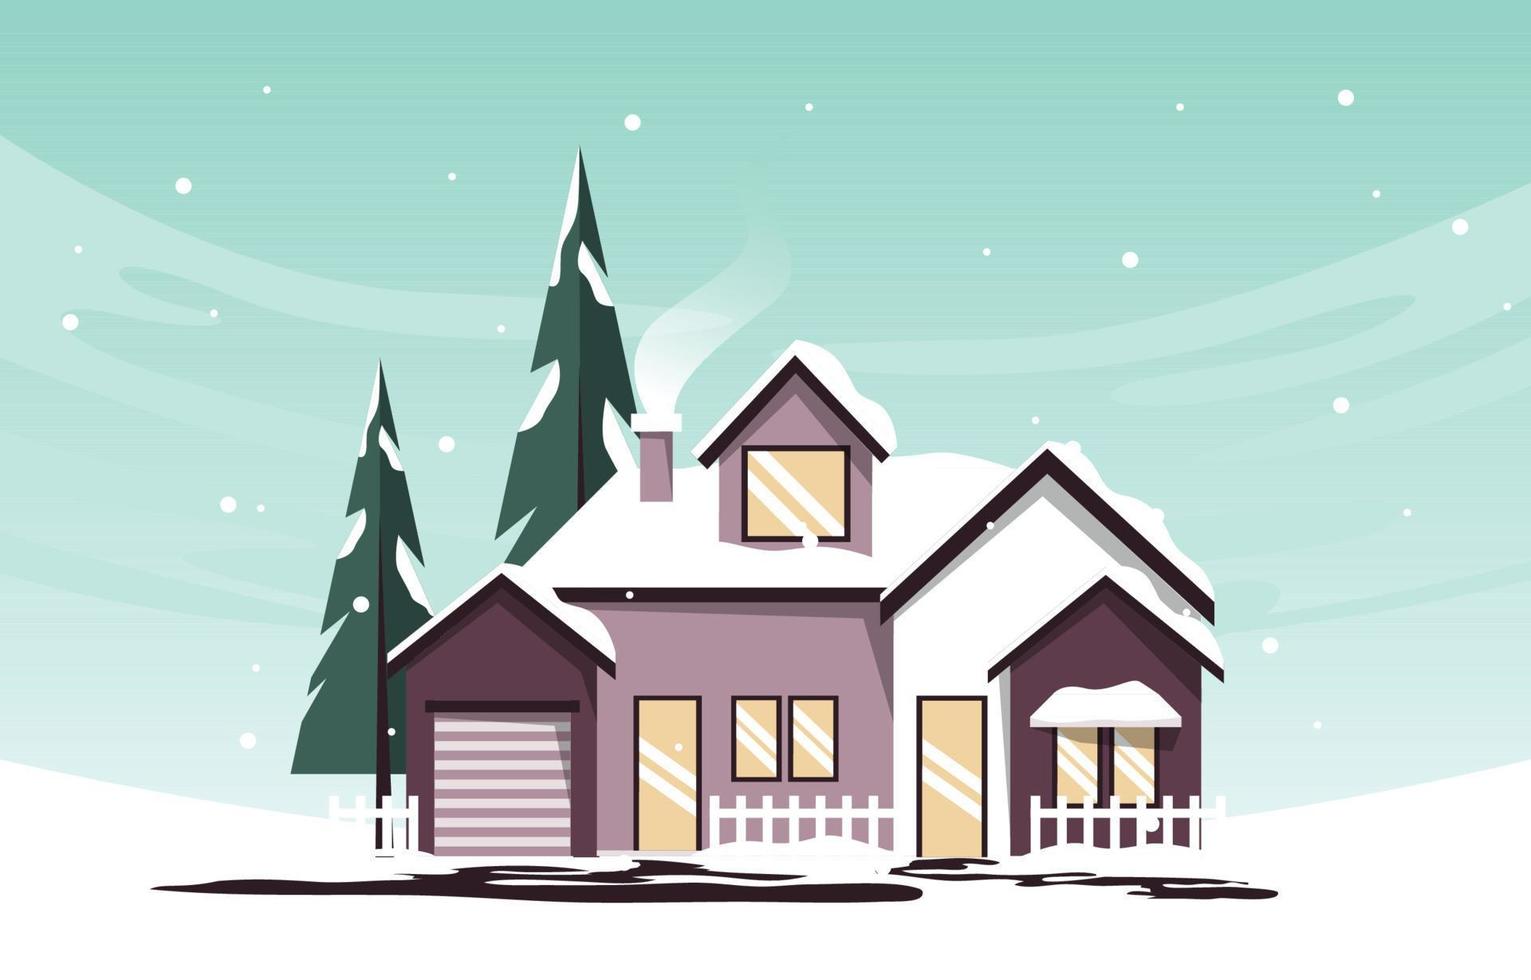 casa pinho em queda de neve ilustração de inverno vetor